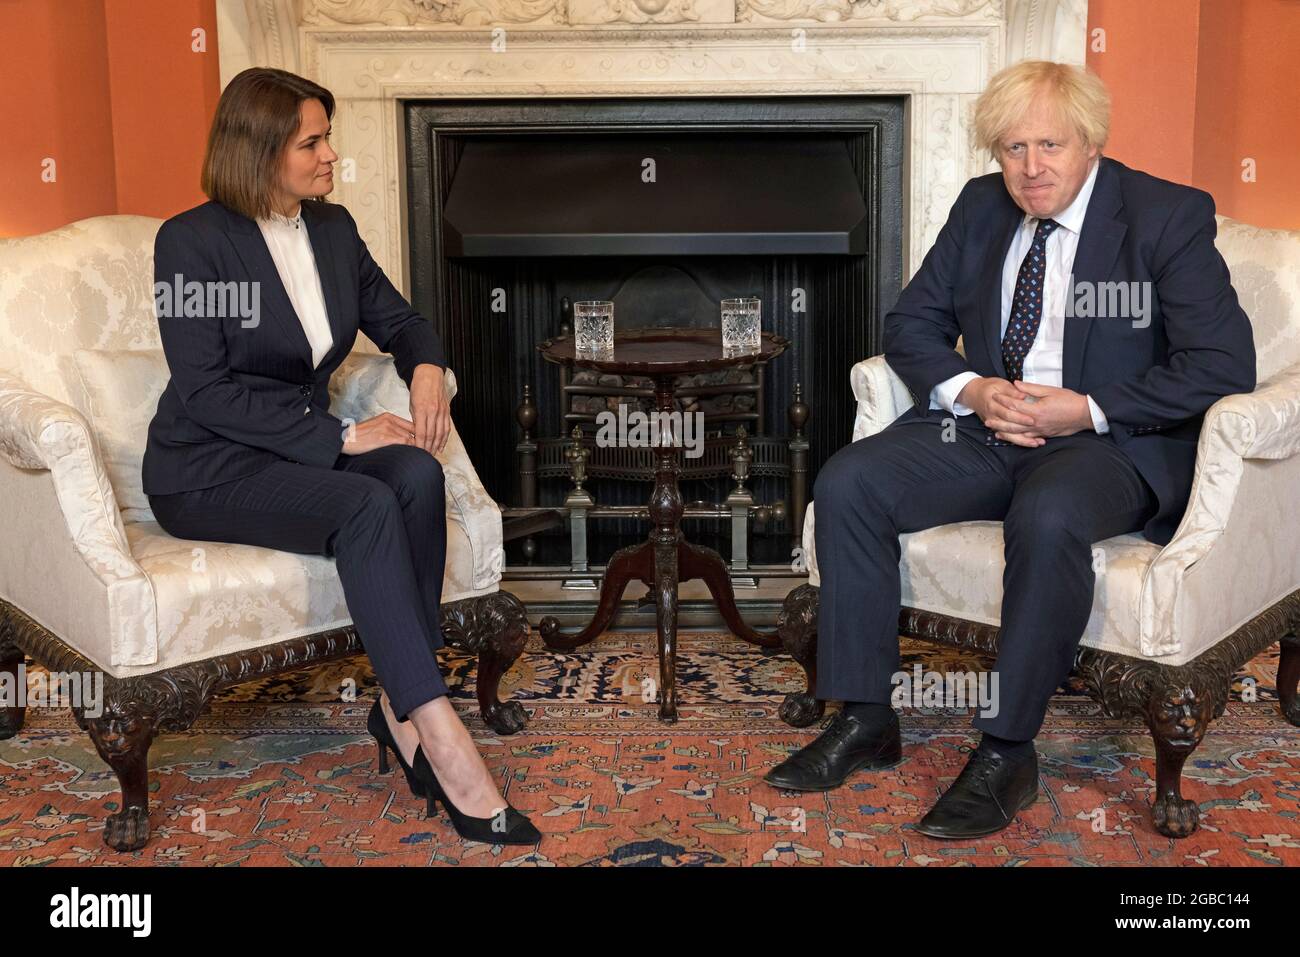 L'attivista bielorusso per i diritti umani e politico Sviatlena Tsikhanouskaya incontra il primo ministro Boris Johnson all'interno di 10 Downing Street a Londra. Data immagine: Martedì 3 agosto 2021. Foto Stock